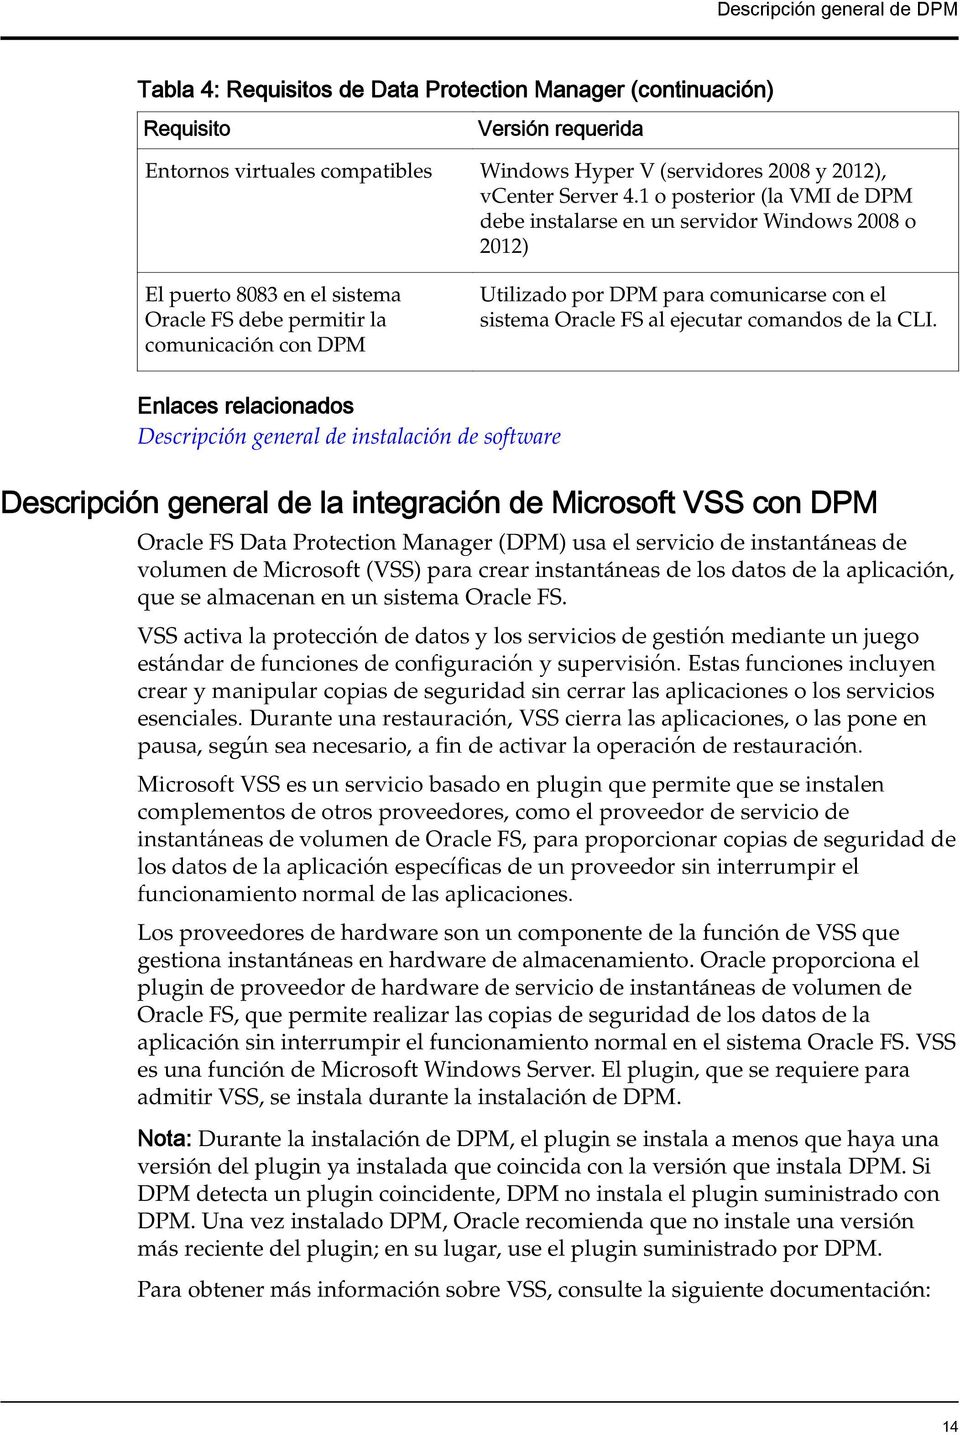 1 o posterior (la VMI de DPM debe instalarse en un servidor Windows 2008 o 2012) El puerto 8083 en el sistema Oracle FS debe permitir la comunicación con DPM Utilizado por DPM para comunicarse con el